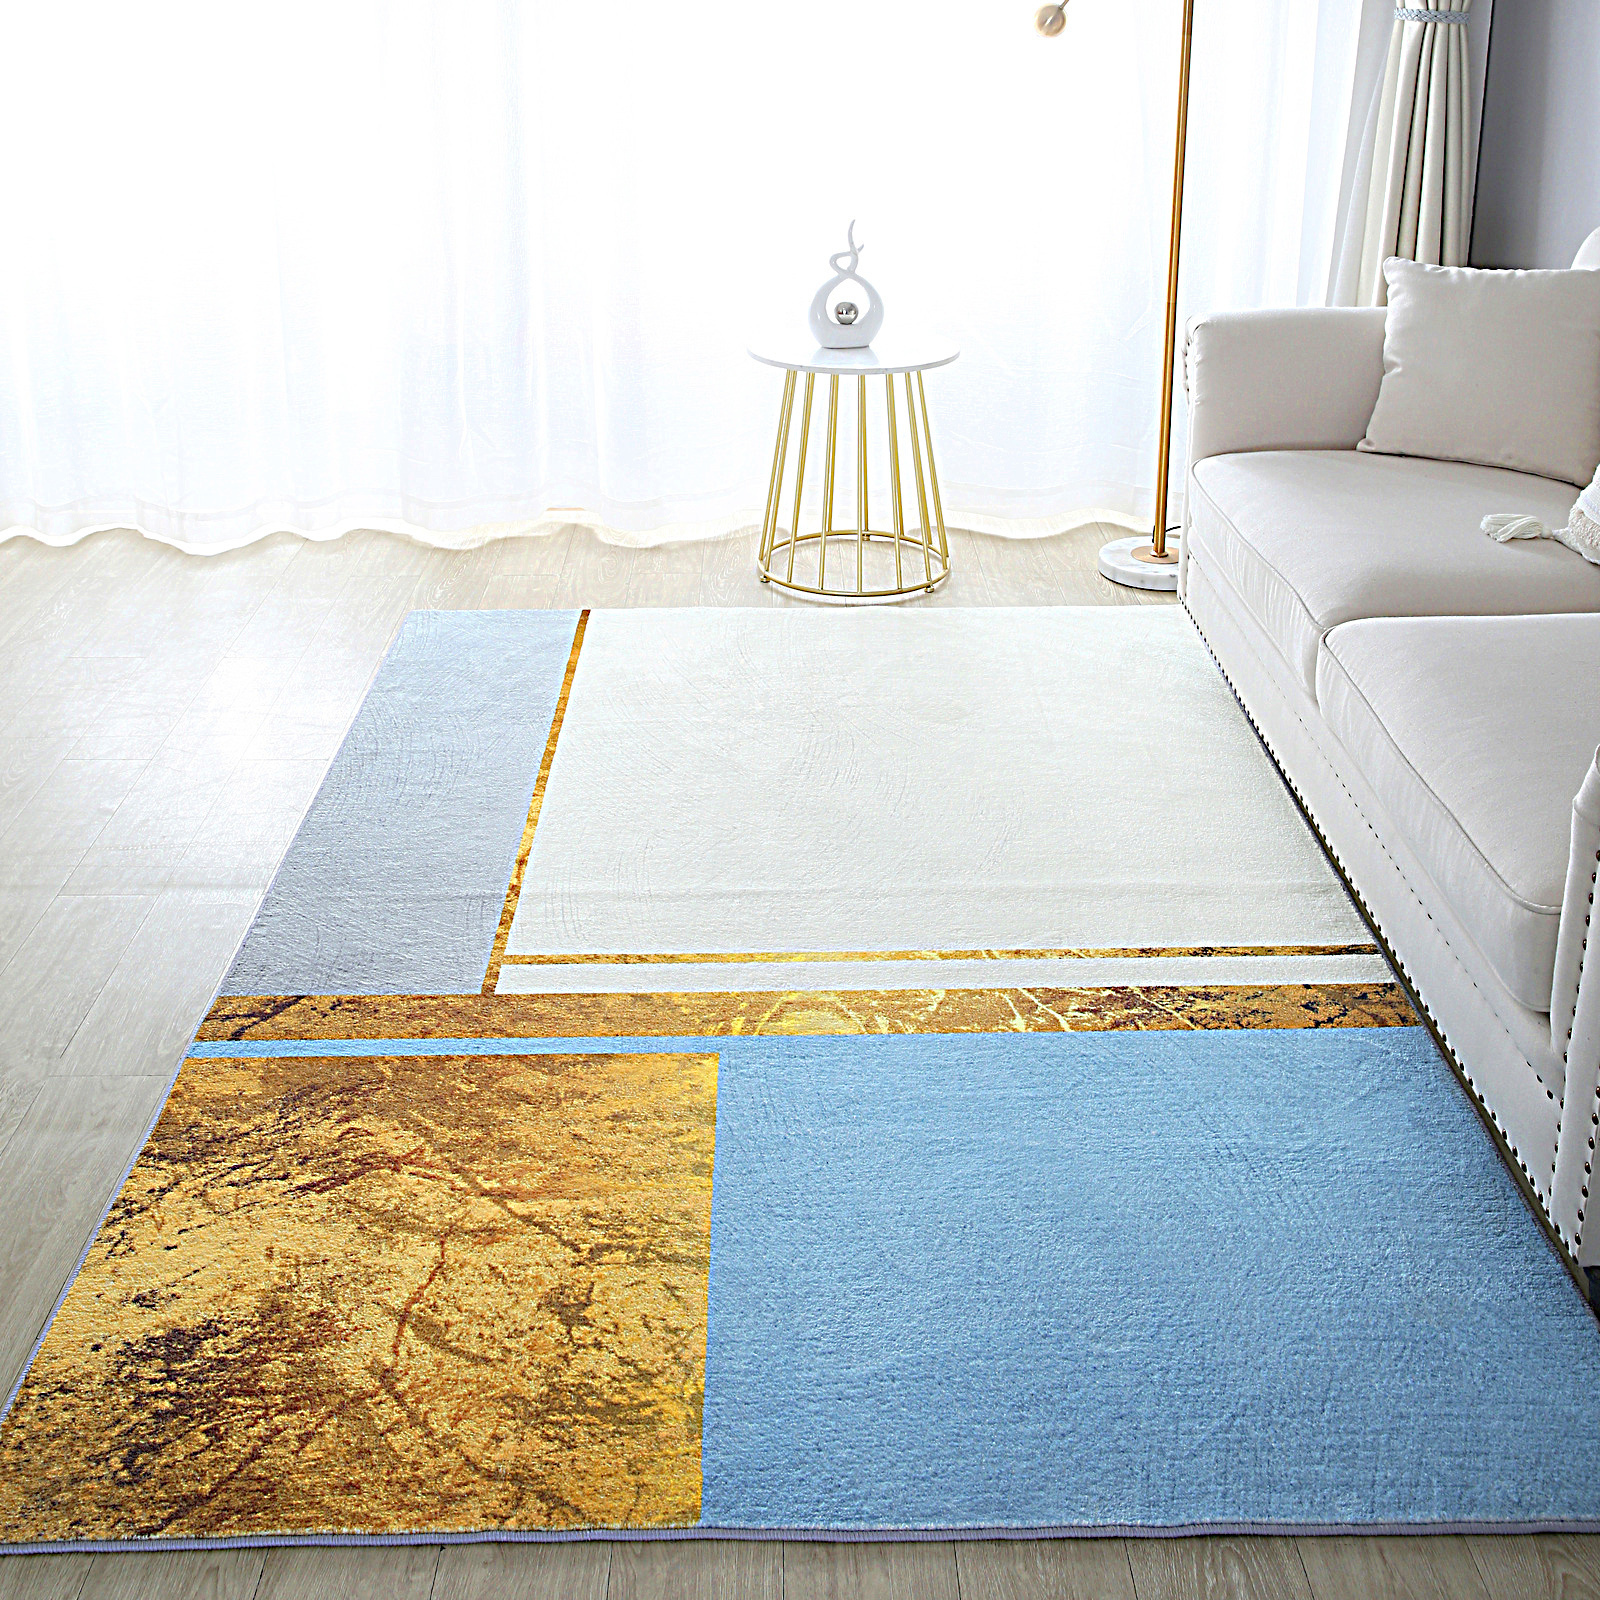 Large Lush Plush Brilliant Designer Carpet Rug (230 x 160)